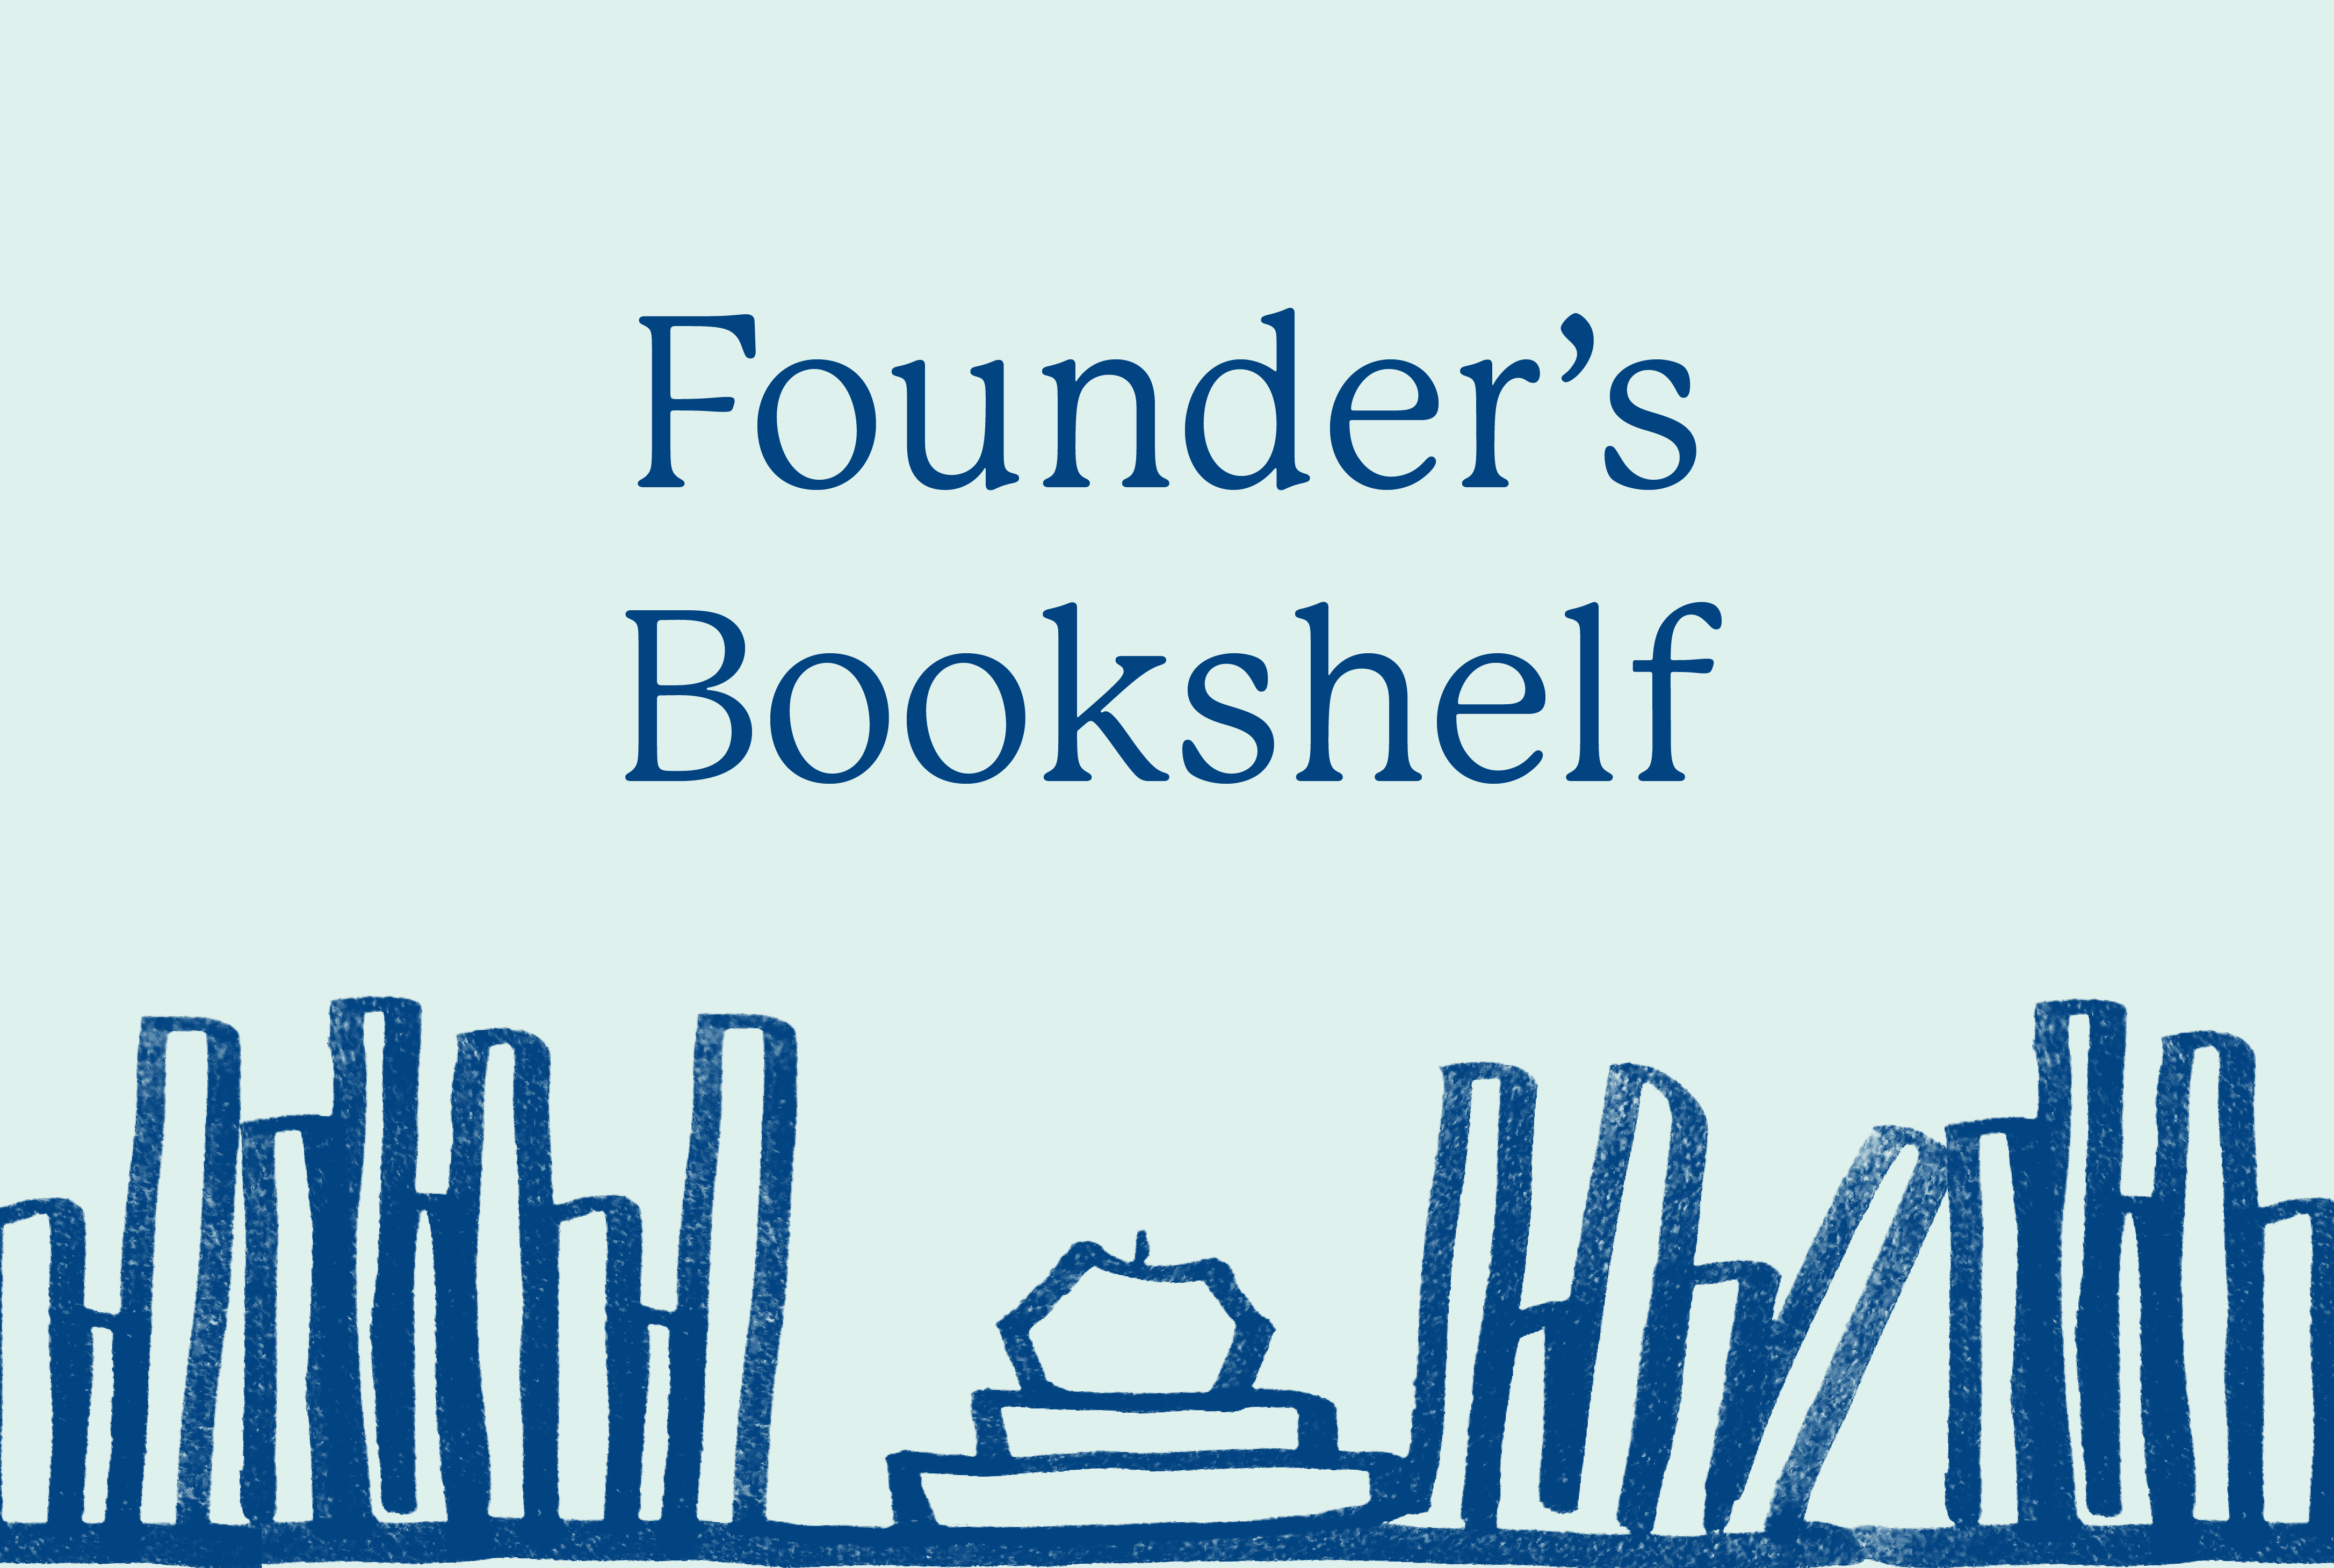 The Founder's Bookshelf